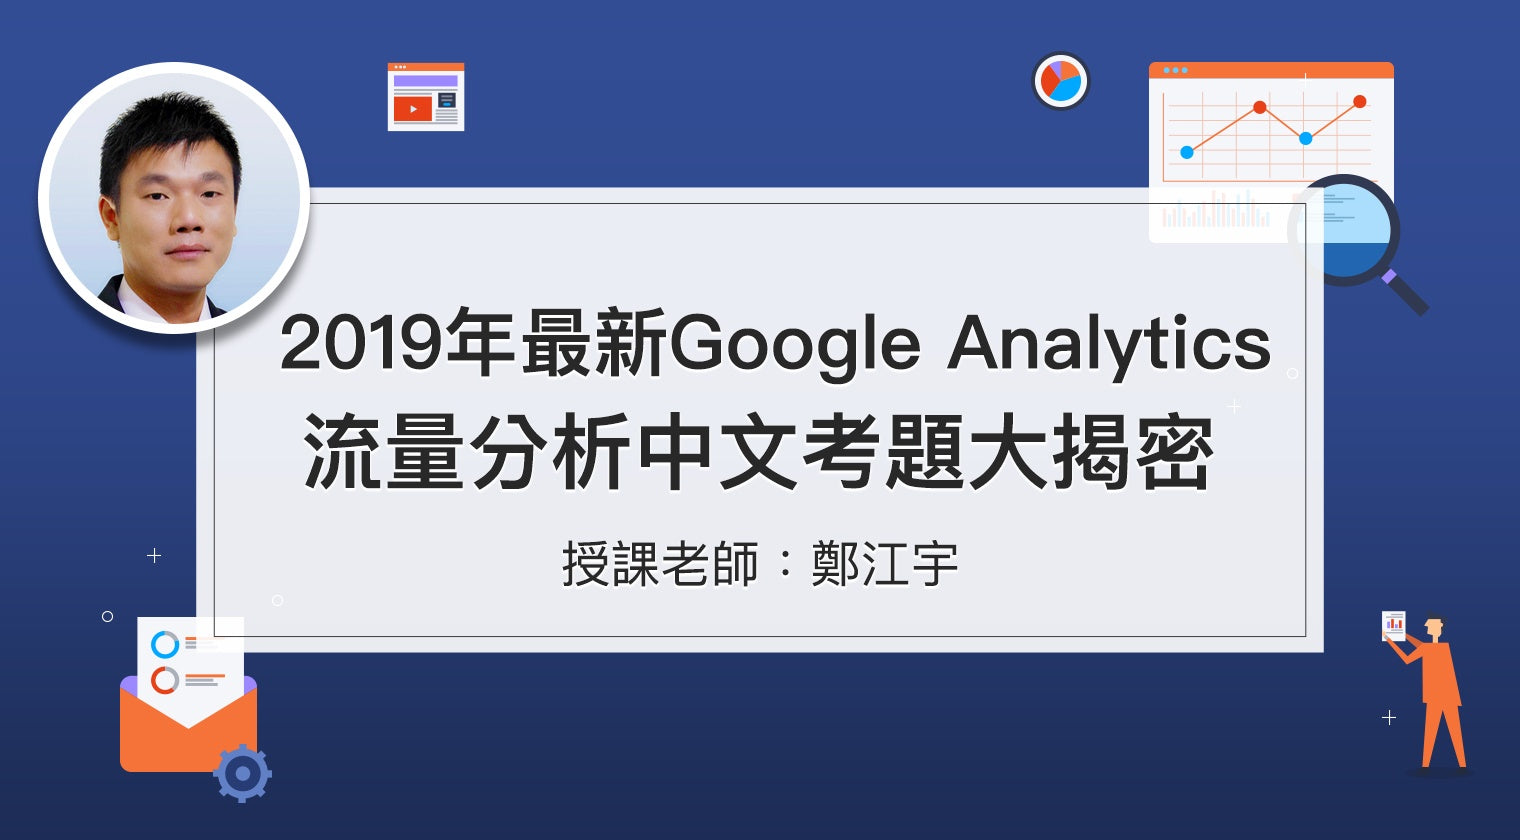 2019年最新Google Analytics流量分析<br>與中文考題大揭密 - MasterTalks 內容電力公司